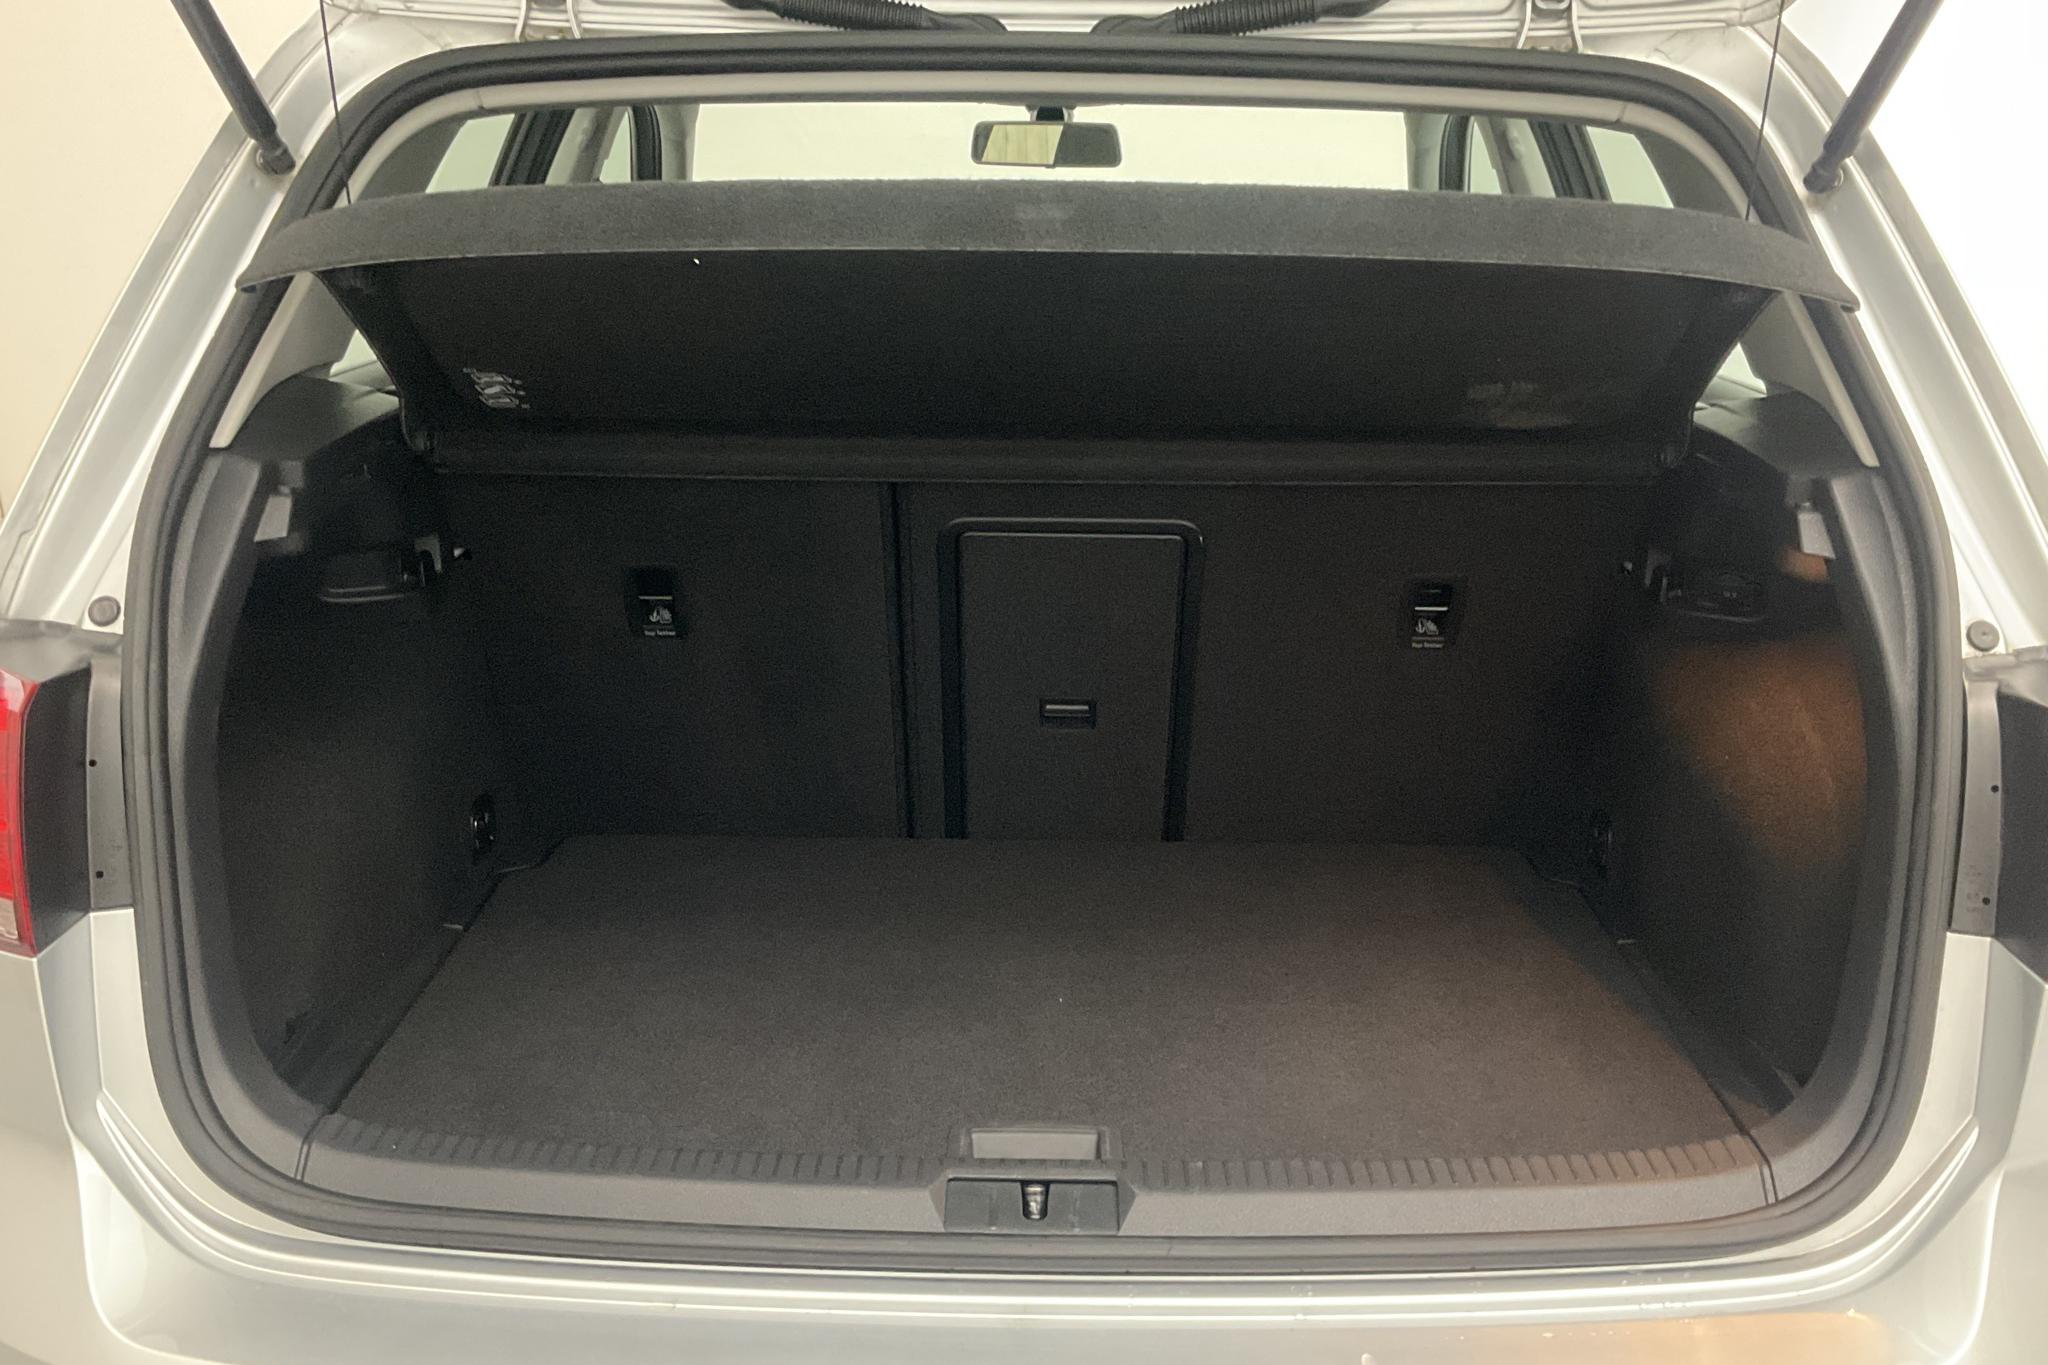 VW Golf VII 1.2 TSI 5dr (110hk) - 41 910 km - Manual - silver - 2017